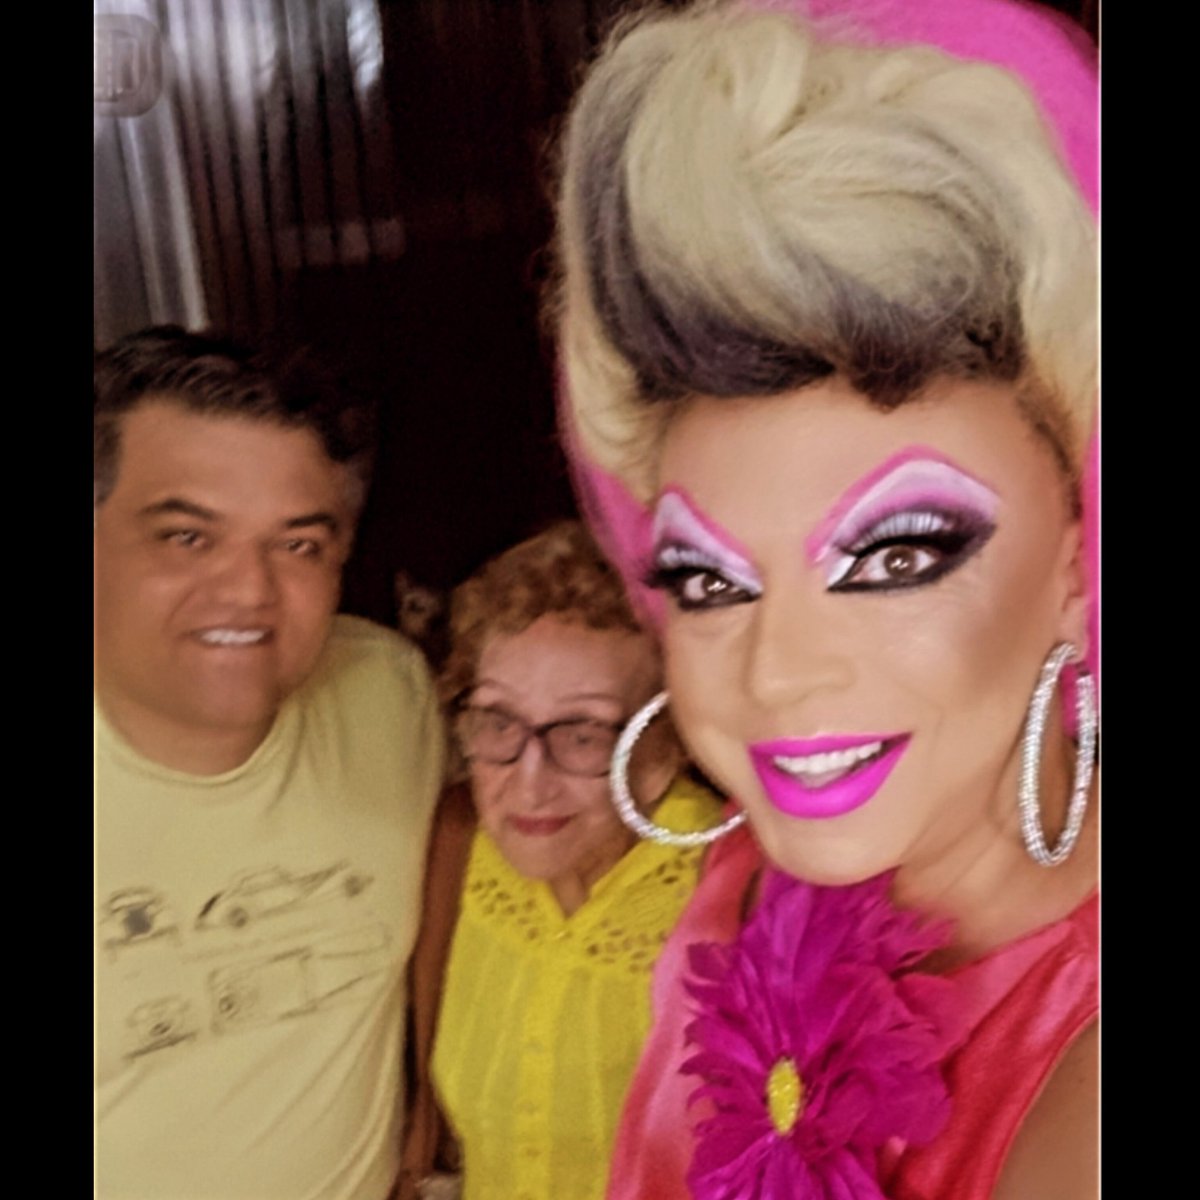 📚 FELICIDADE ao lado do marido @falecomchefcarlito e Dona Branquinha com sua linda blusa amarela.
Drag queen TchaKa 

Partimos para o lançamento do livro 'Diverso Somos Todos' do escritor @reinaldo.bulgarelli @martinsfontespaulista @aberje